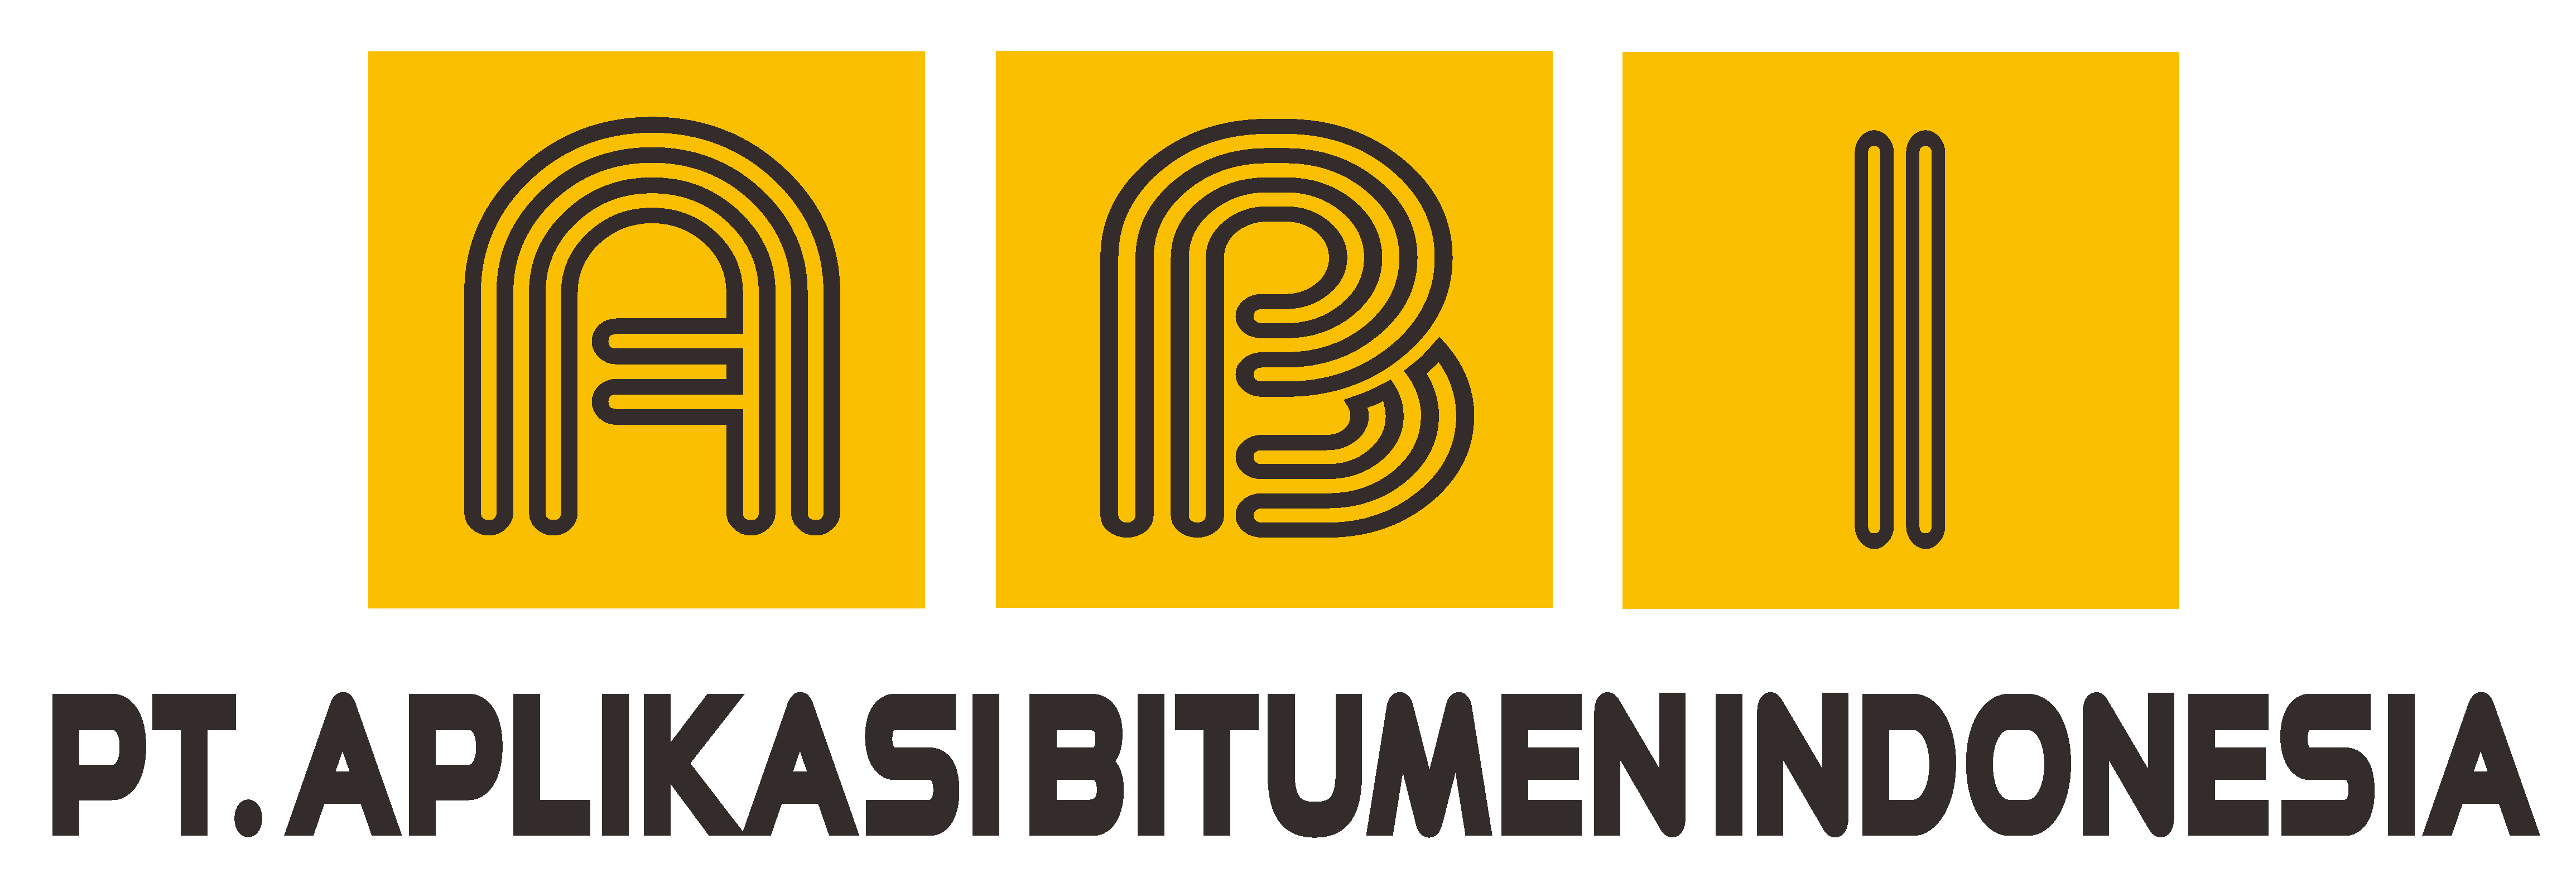 Logo Aplikasi Bitumen Indonesia